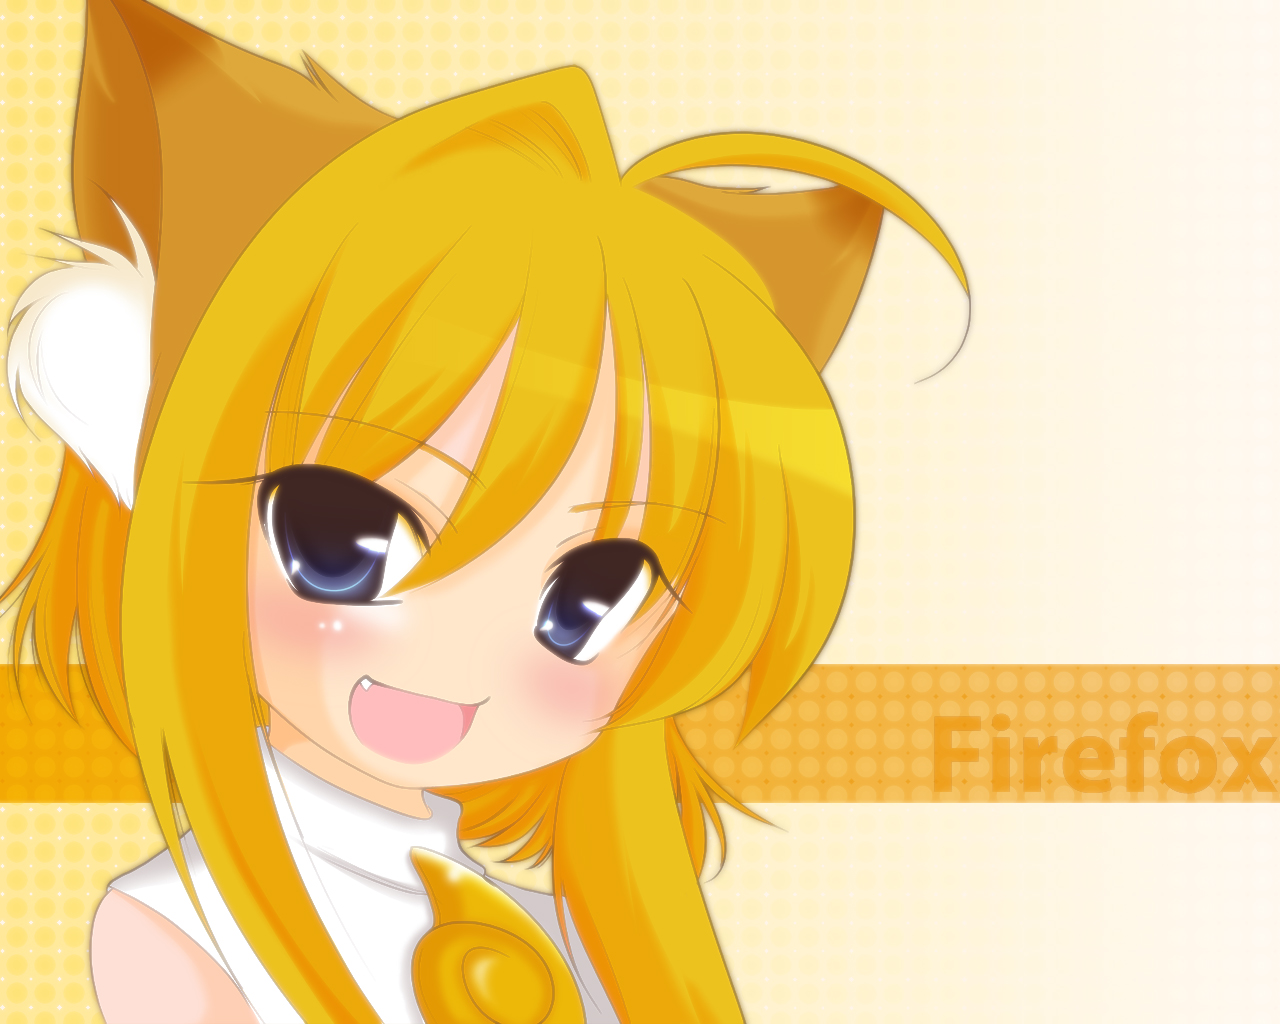 Firefox Anime - HD wallpaper | Pxfuel